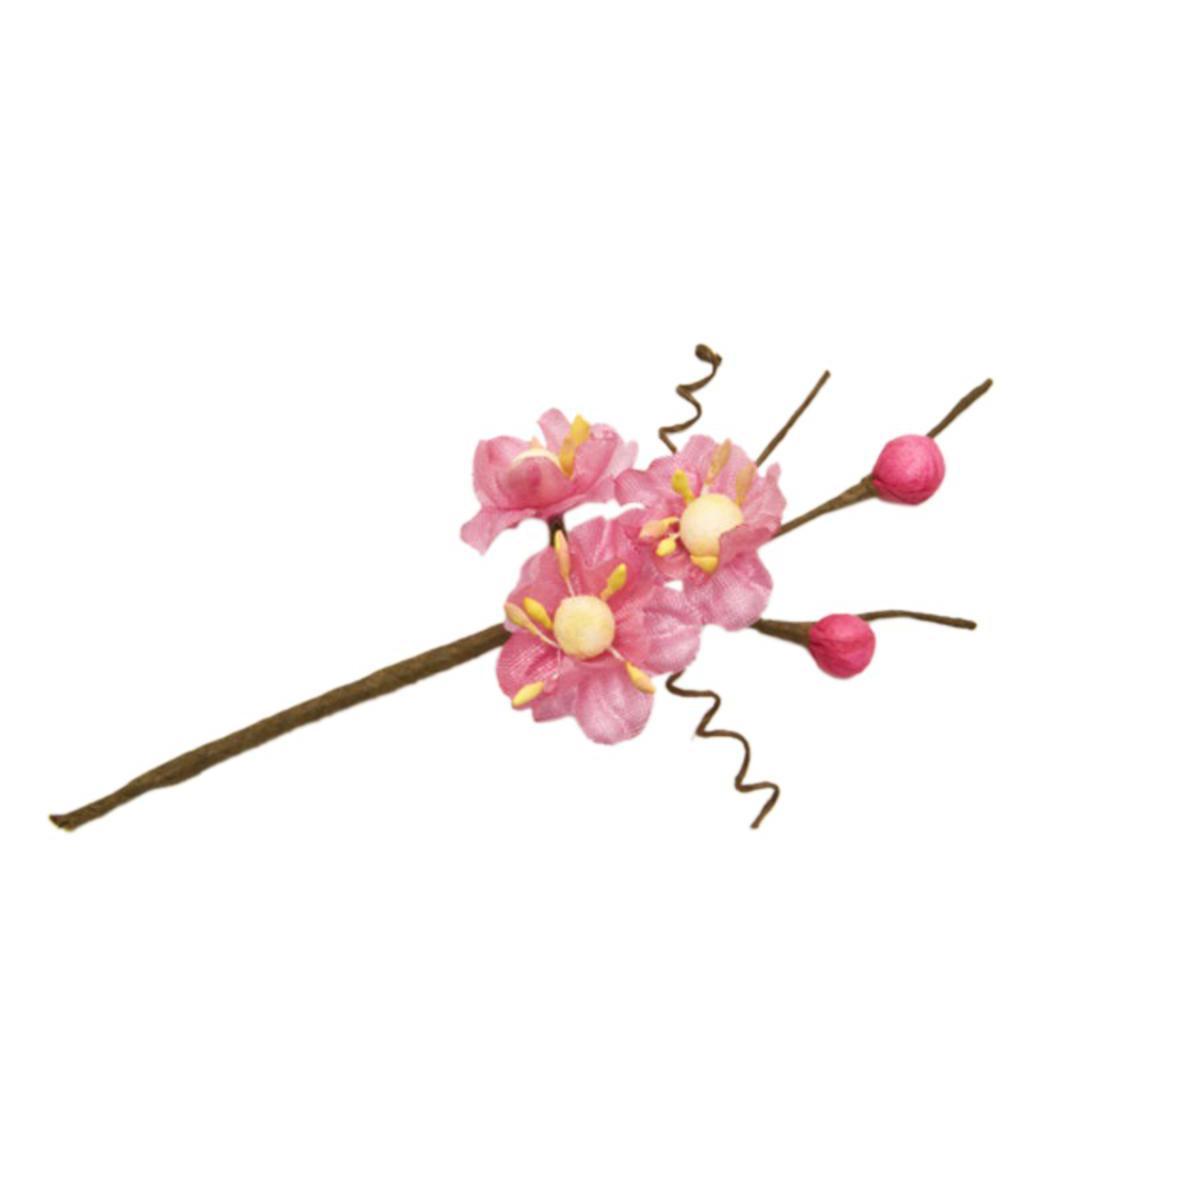 6 tiges avec fleurs de pêcher - 10 cm - Polyester - Rose